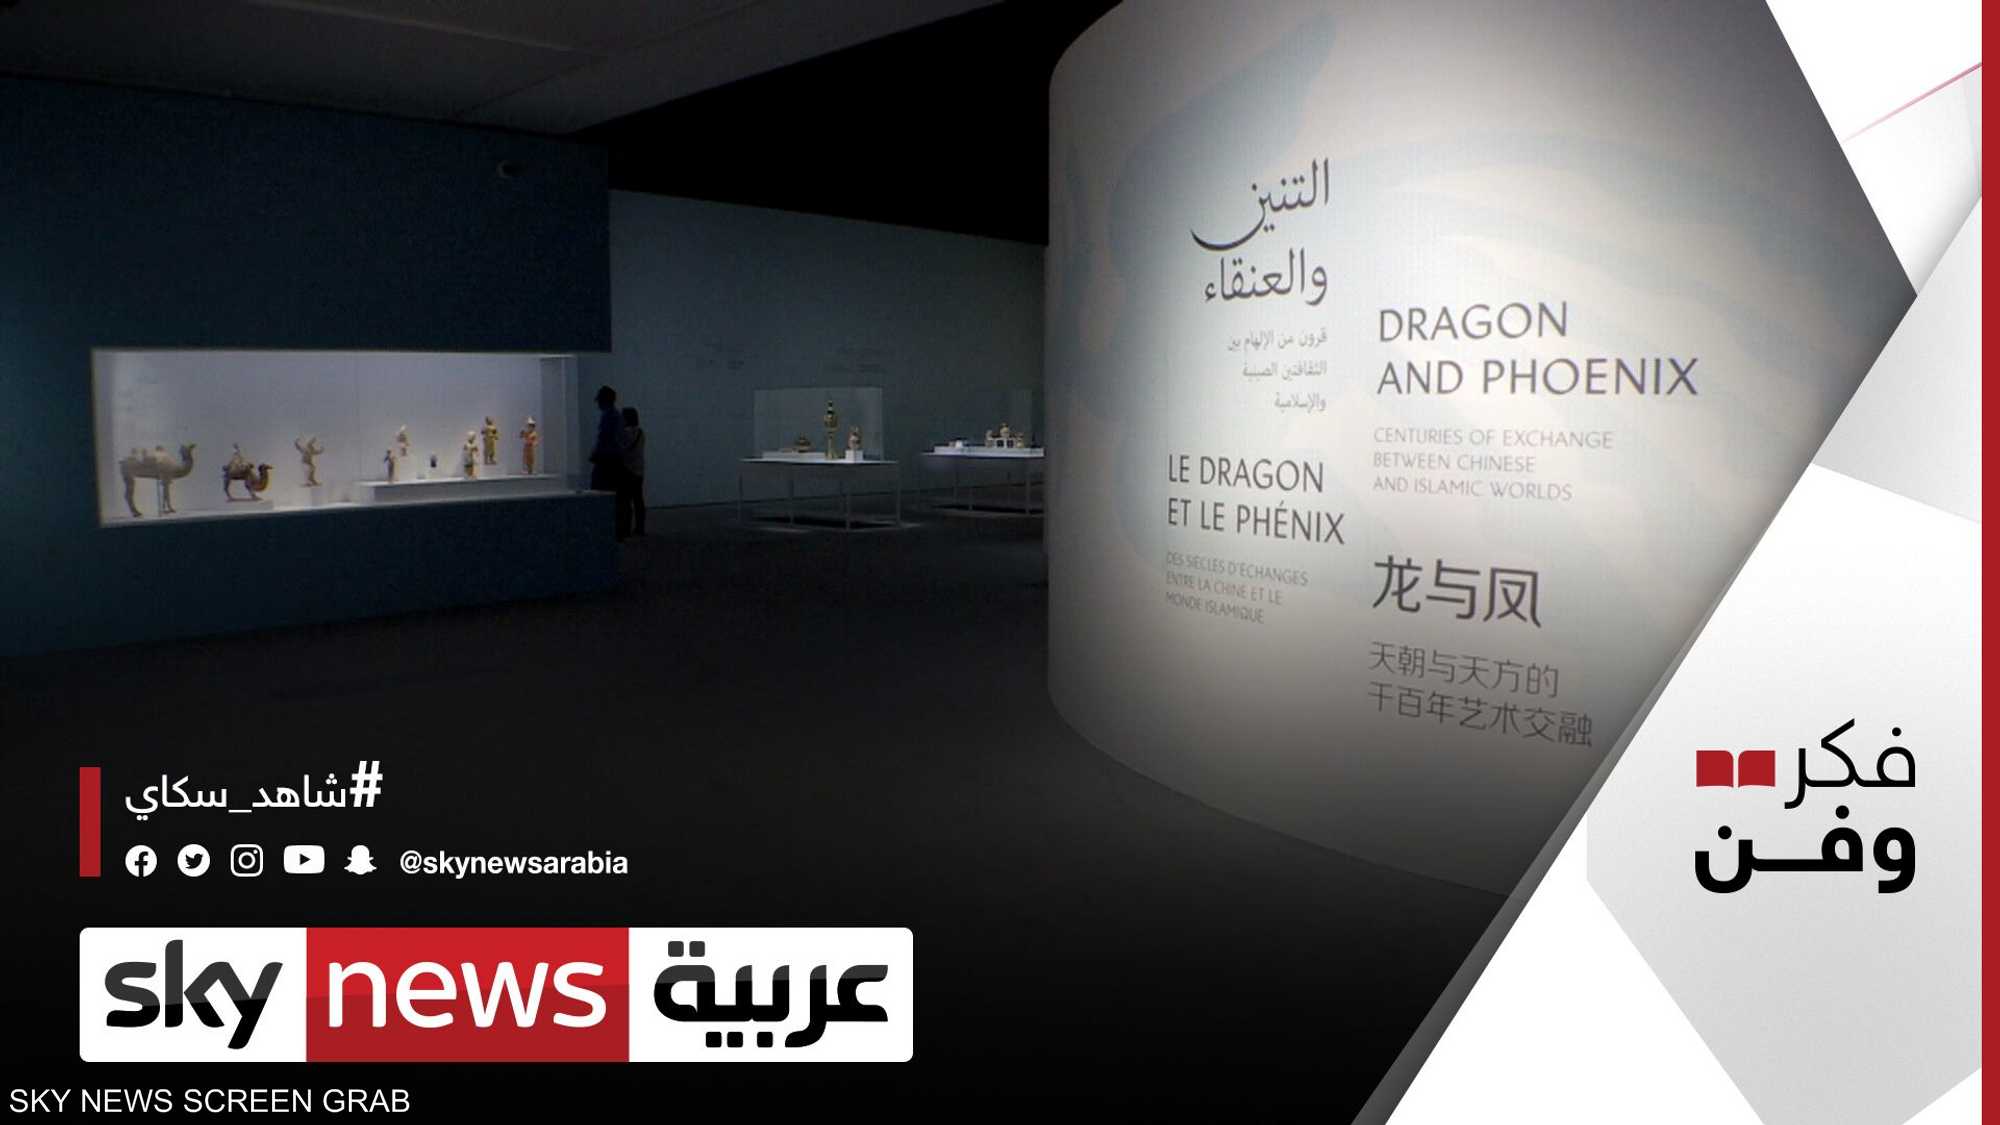 متحف اللوفر أبوظبي يطلق معرضه "التنين والعنقاء"